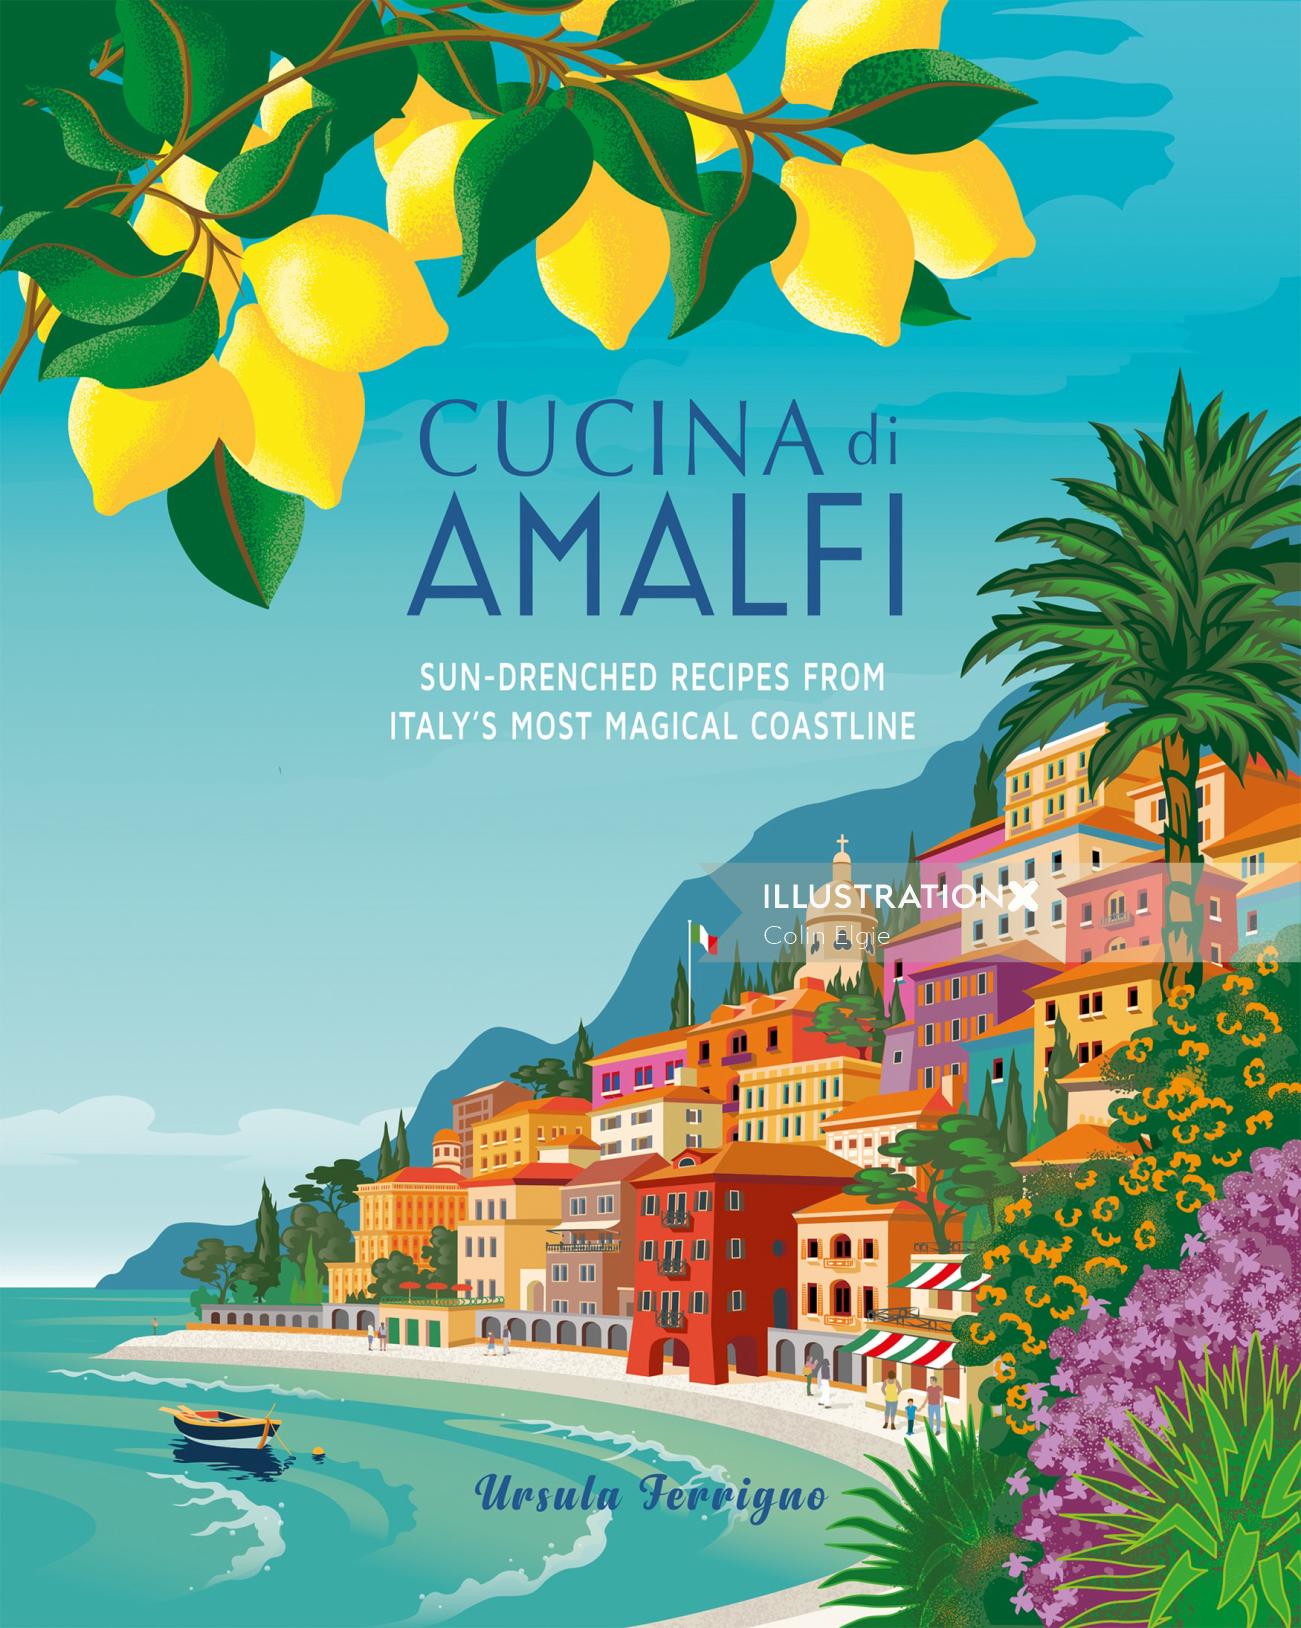 Cookbook cover design for "Cucina di Amalfi"